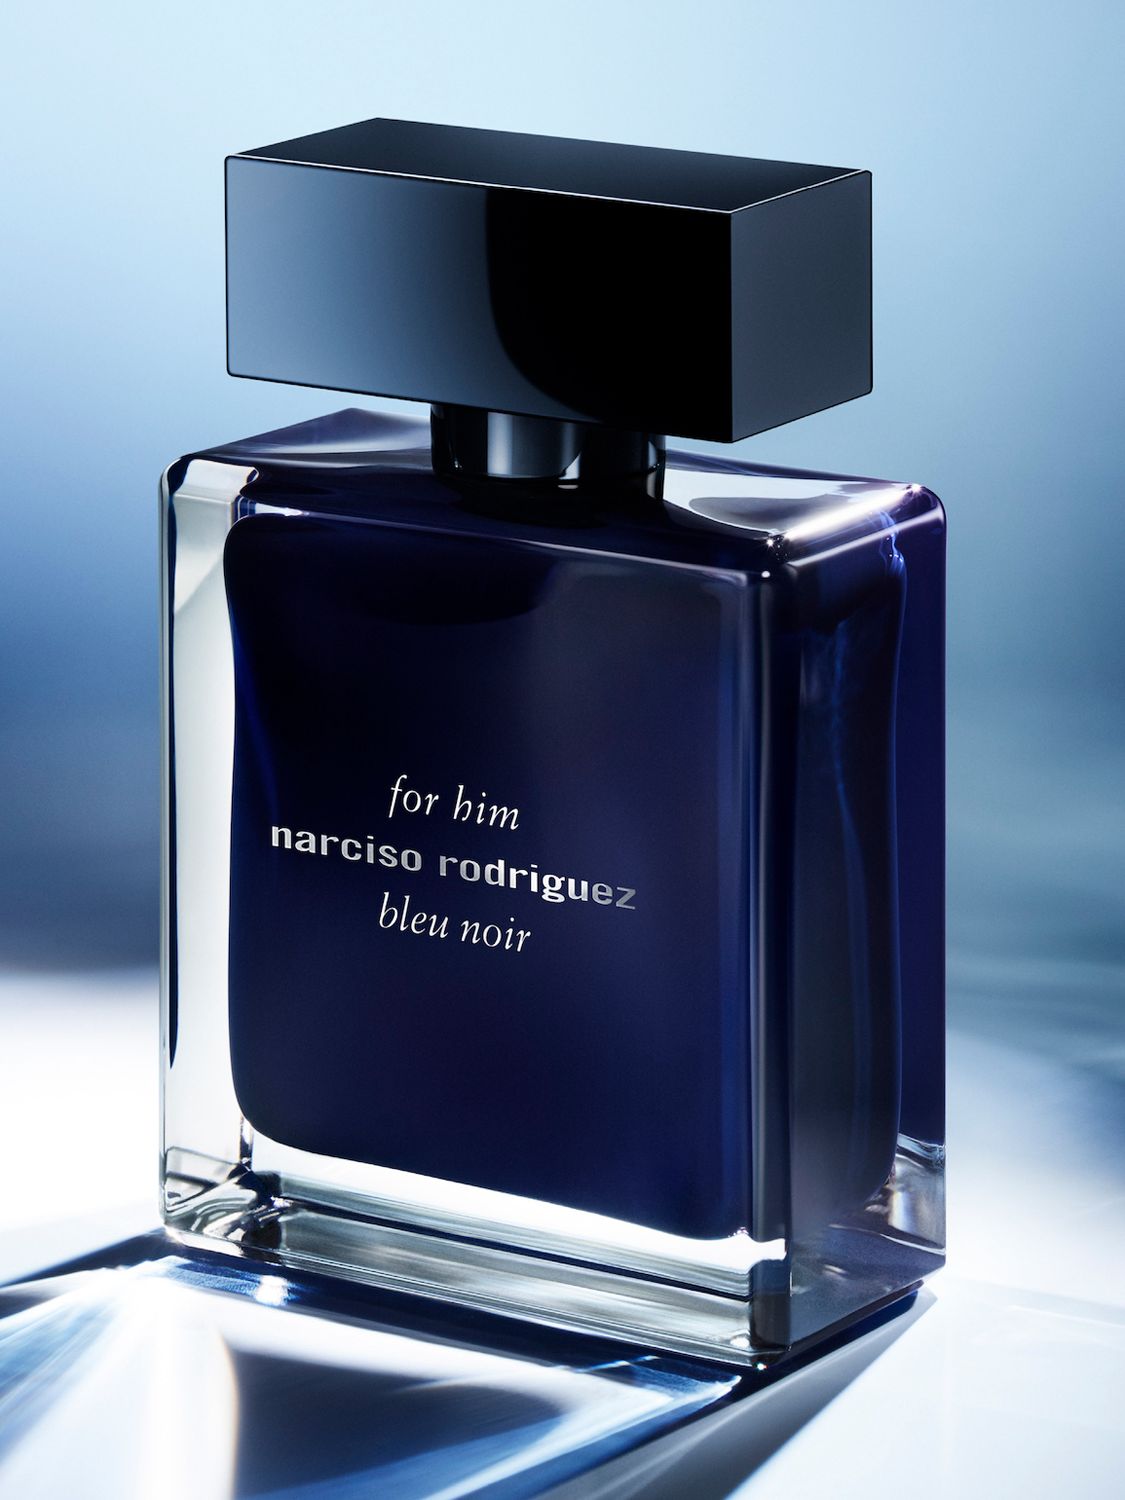 Narciso Rodriguez For Him Bleu Noir Eau de Toilette, 50ml at John